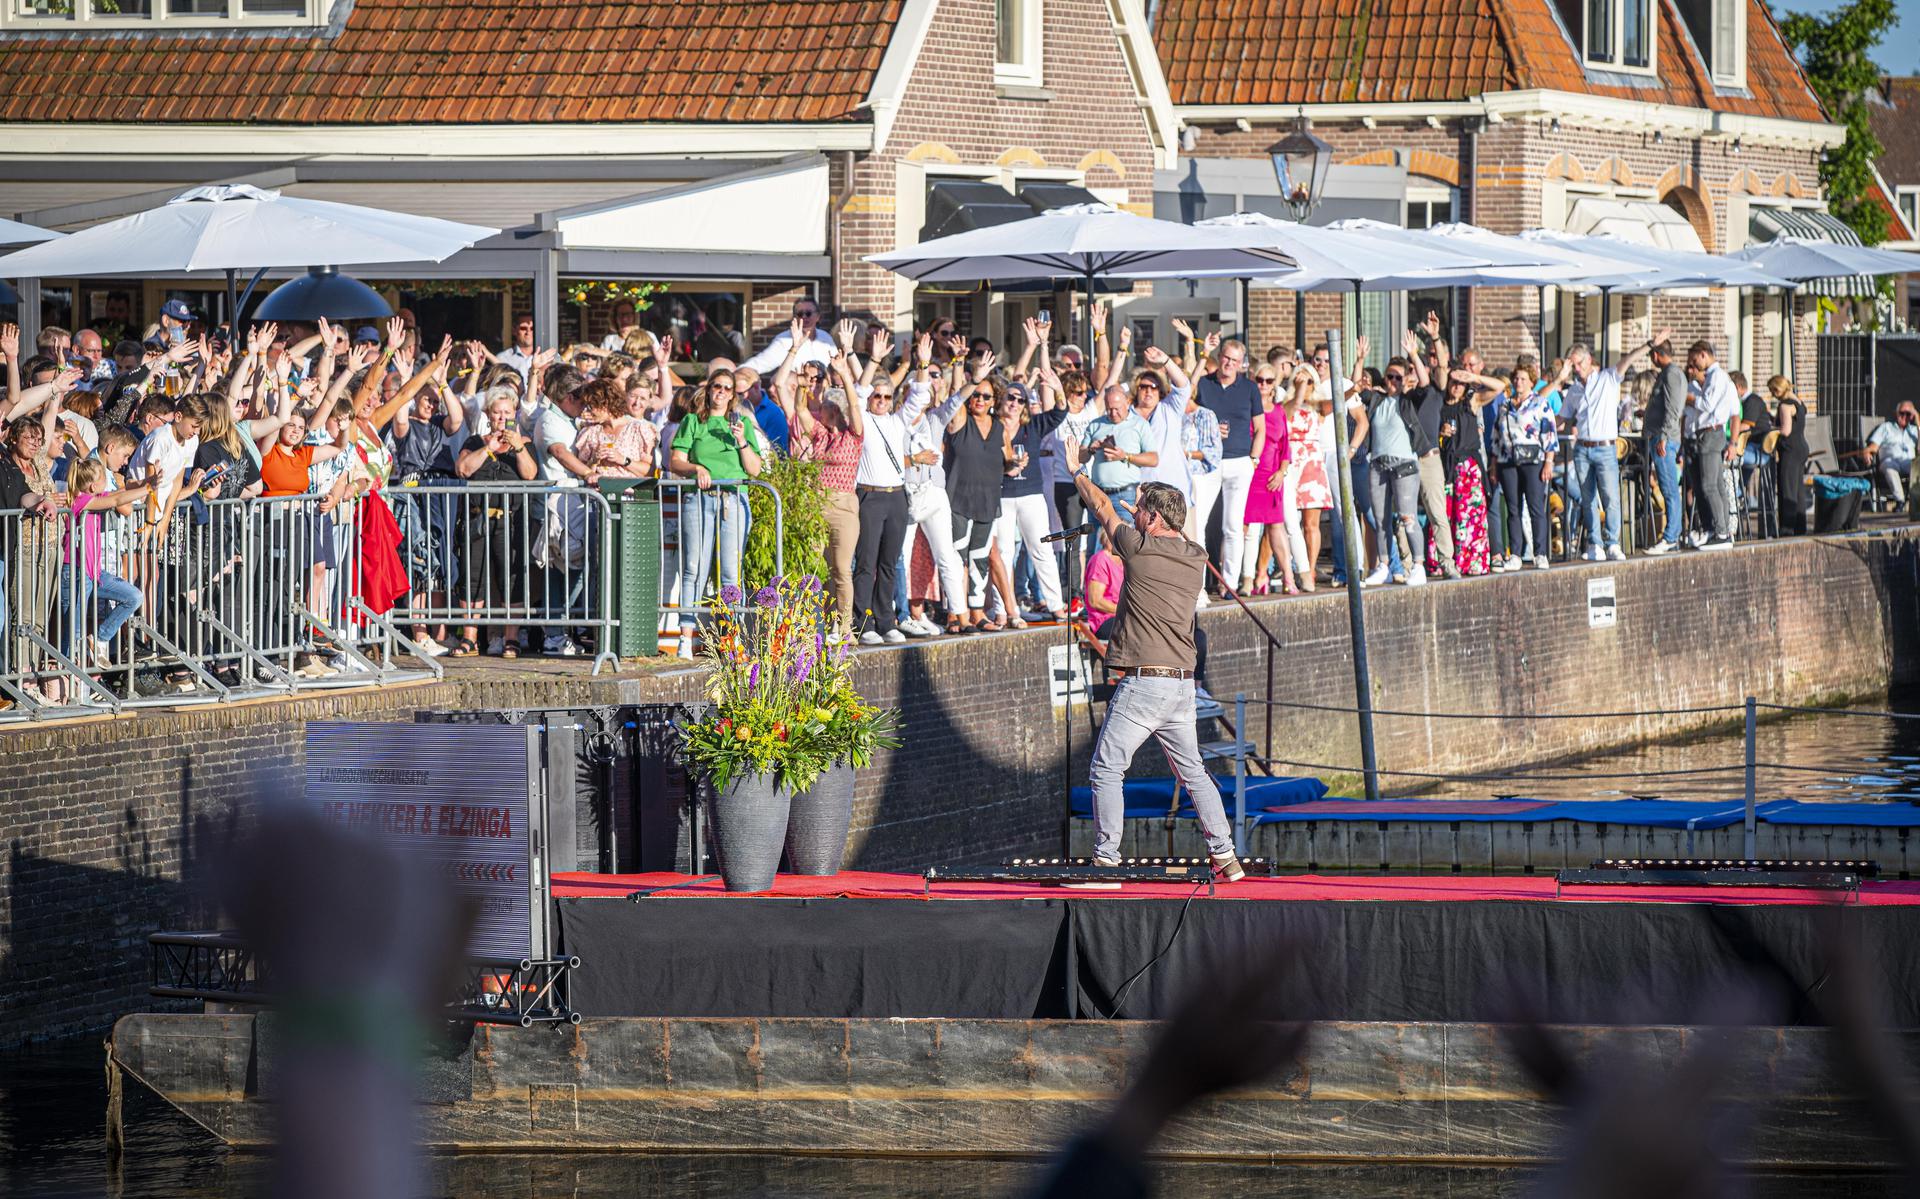 In de havenkolk in Blokzijl werd vorig jaar volop gefeest op de muziek van Jeroen van der Boom. 